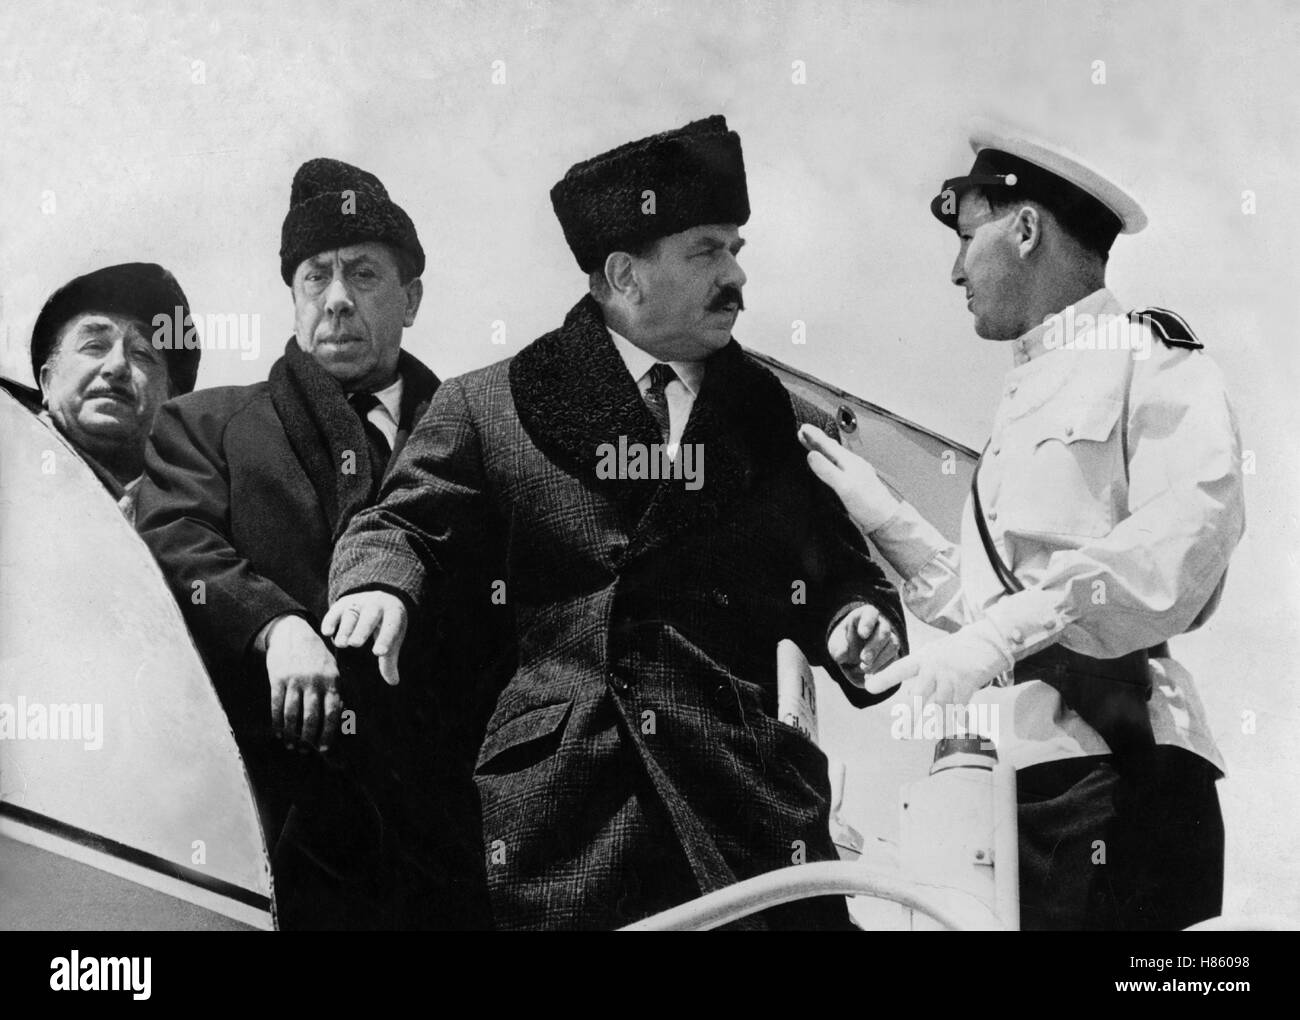 Genosse Don Camillo, (IL COMPAGNO DON CAMILLO) IT-F 1965, Regie: Luigi Comencini, GINO CERVI, FERNANDEL (mi), Stichwort: Russenmütze Stockfoto